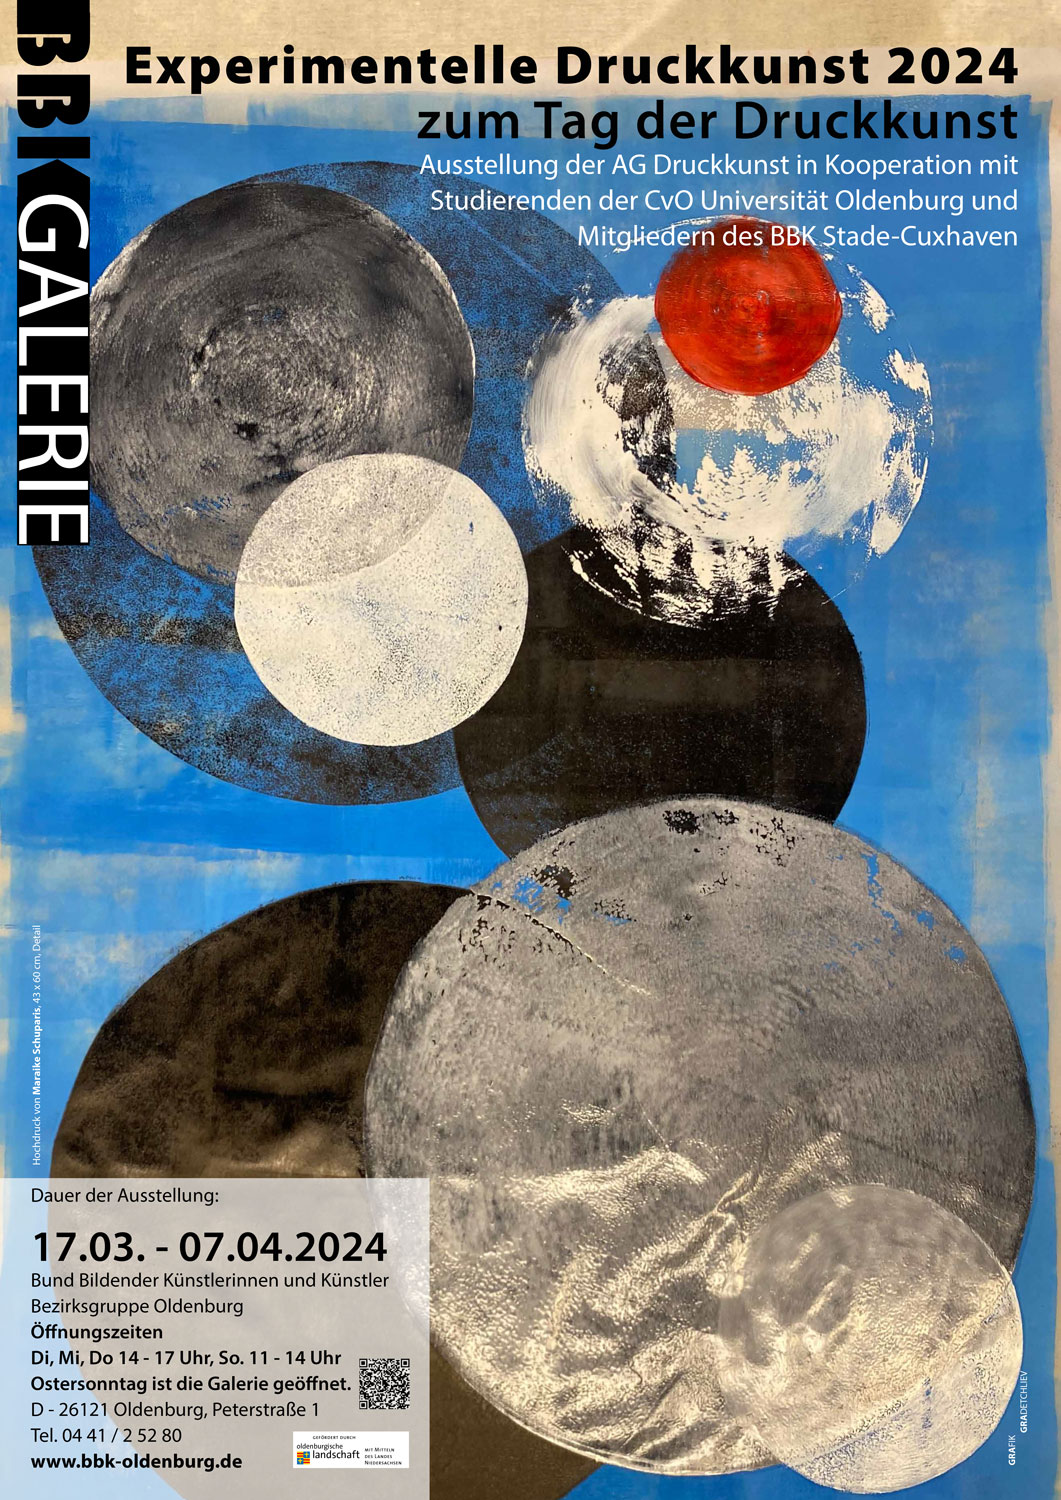 Plakat für die Ausstellung "Experimentelle Druckgrafik" in der BBK Galerie Oldenburg, bei der ich, Anja Höppner, als Gastkünstlerin dabei bin.